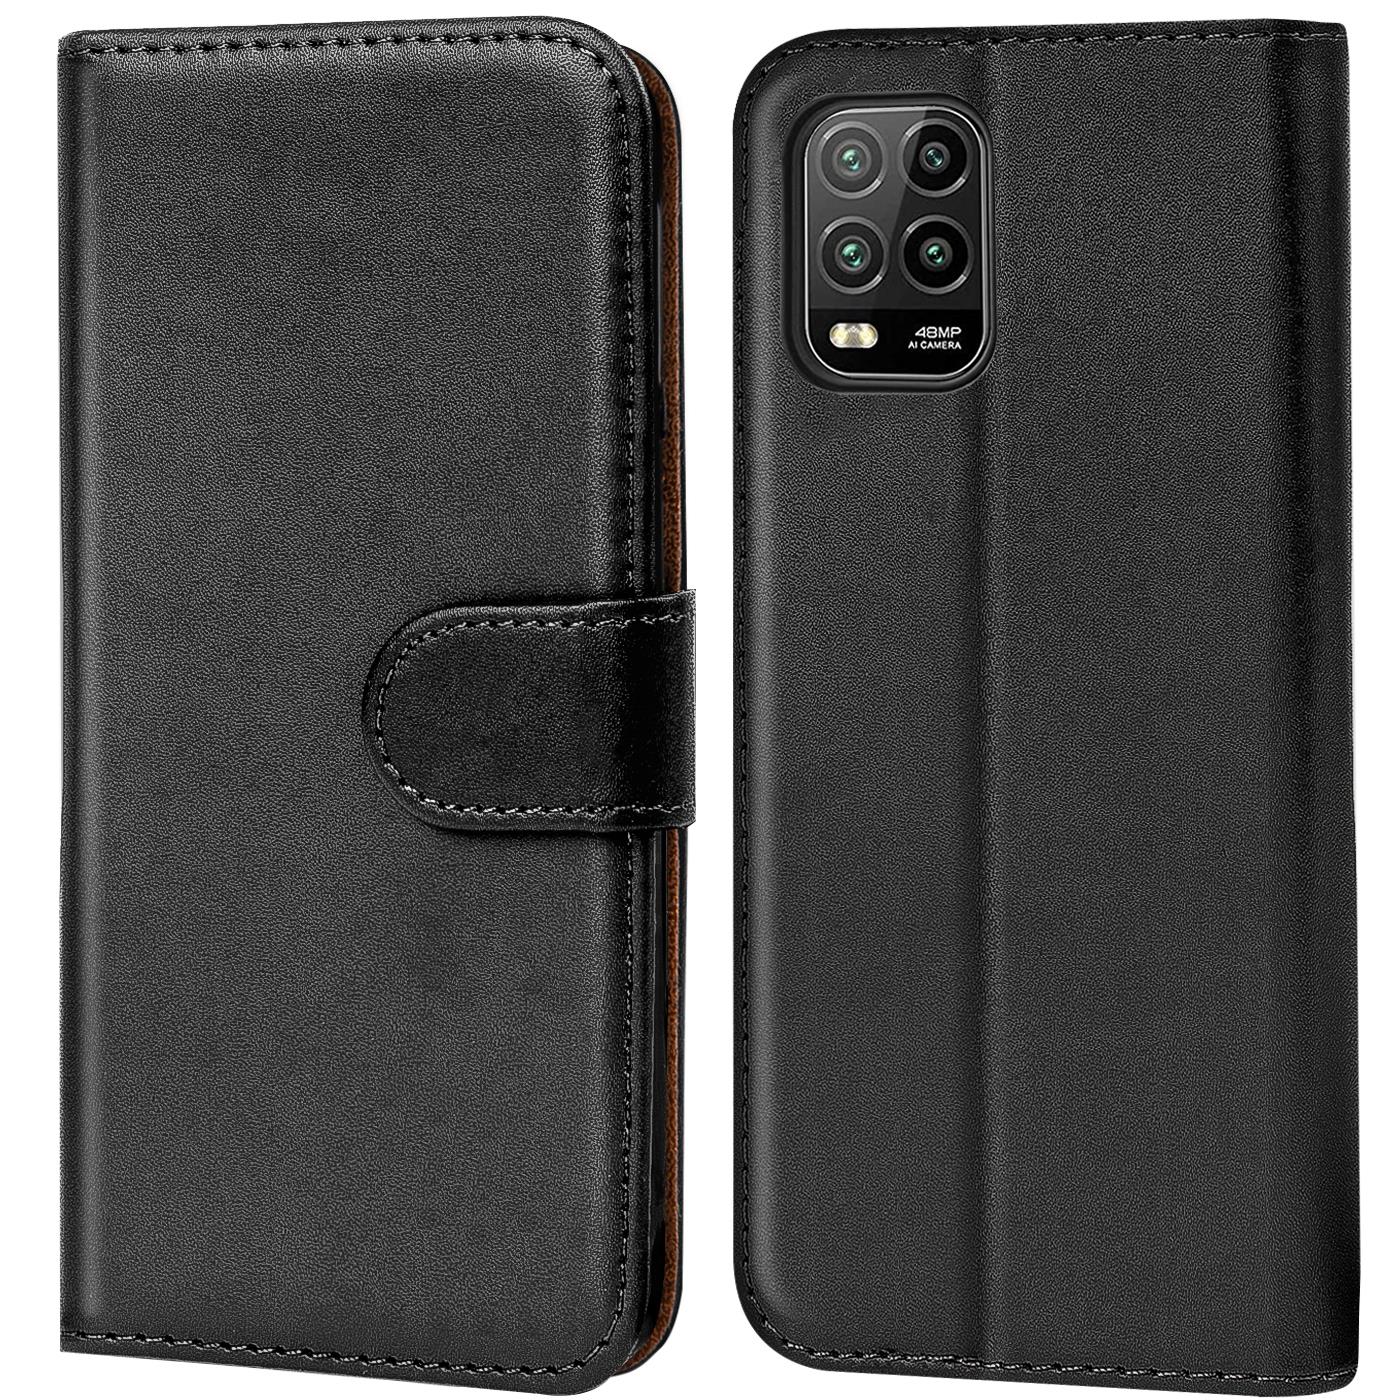 Indexbild 9 - Schutz Hülle Für Xiaomi Mi Handy Tasche Flip Case Cover Wallet Book Hülle Etui